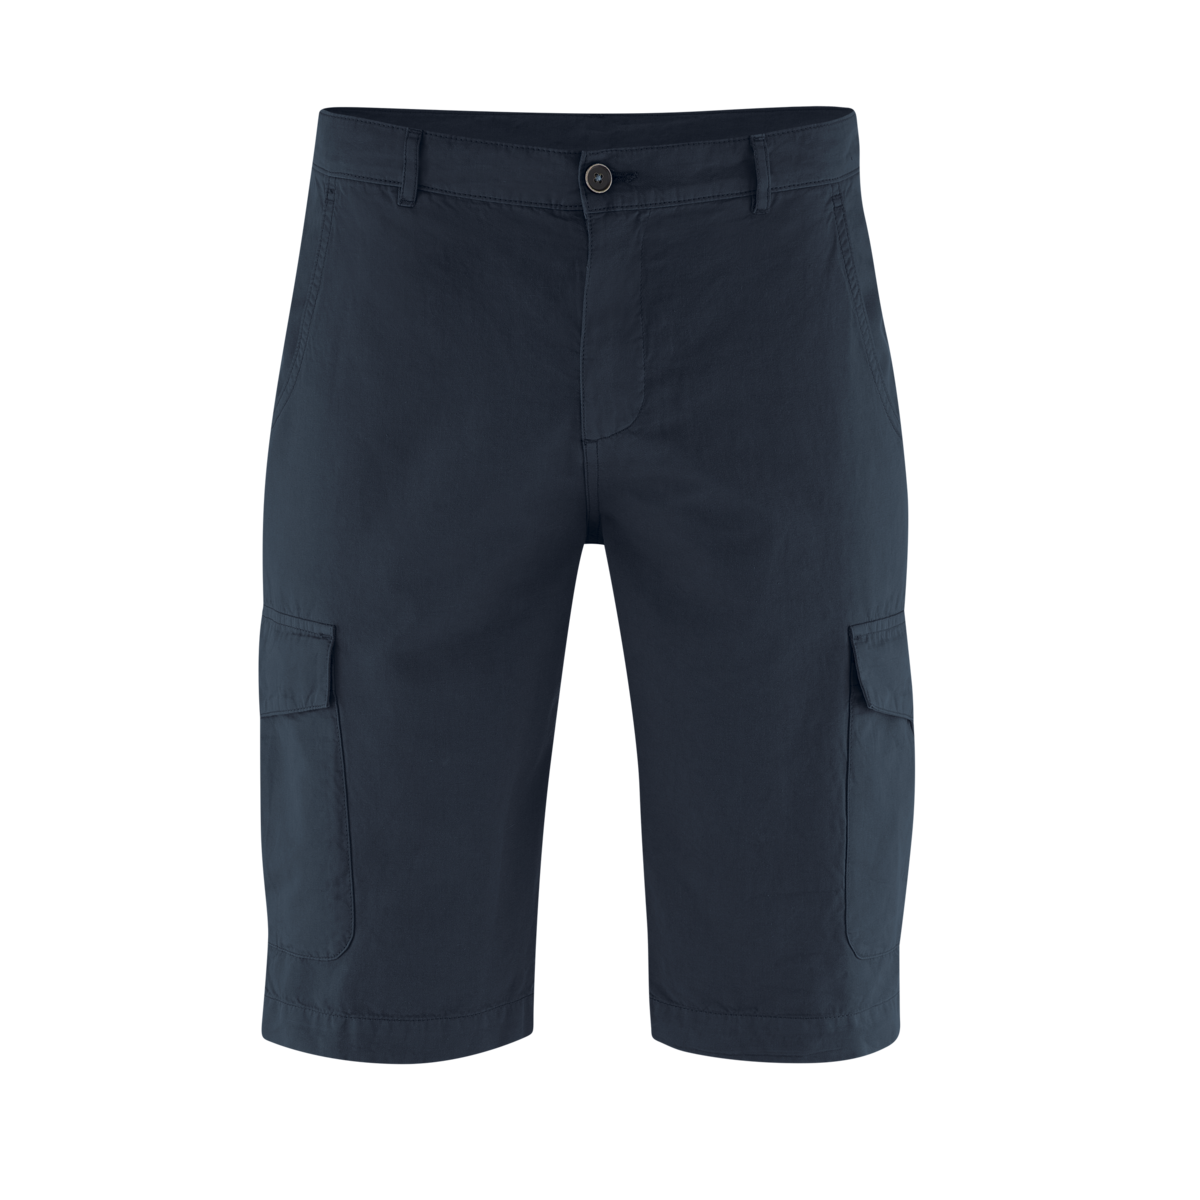 Blue Bermuda shorts, CEDRIC